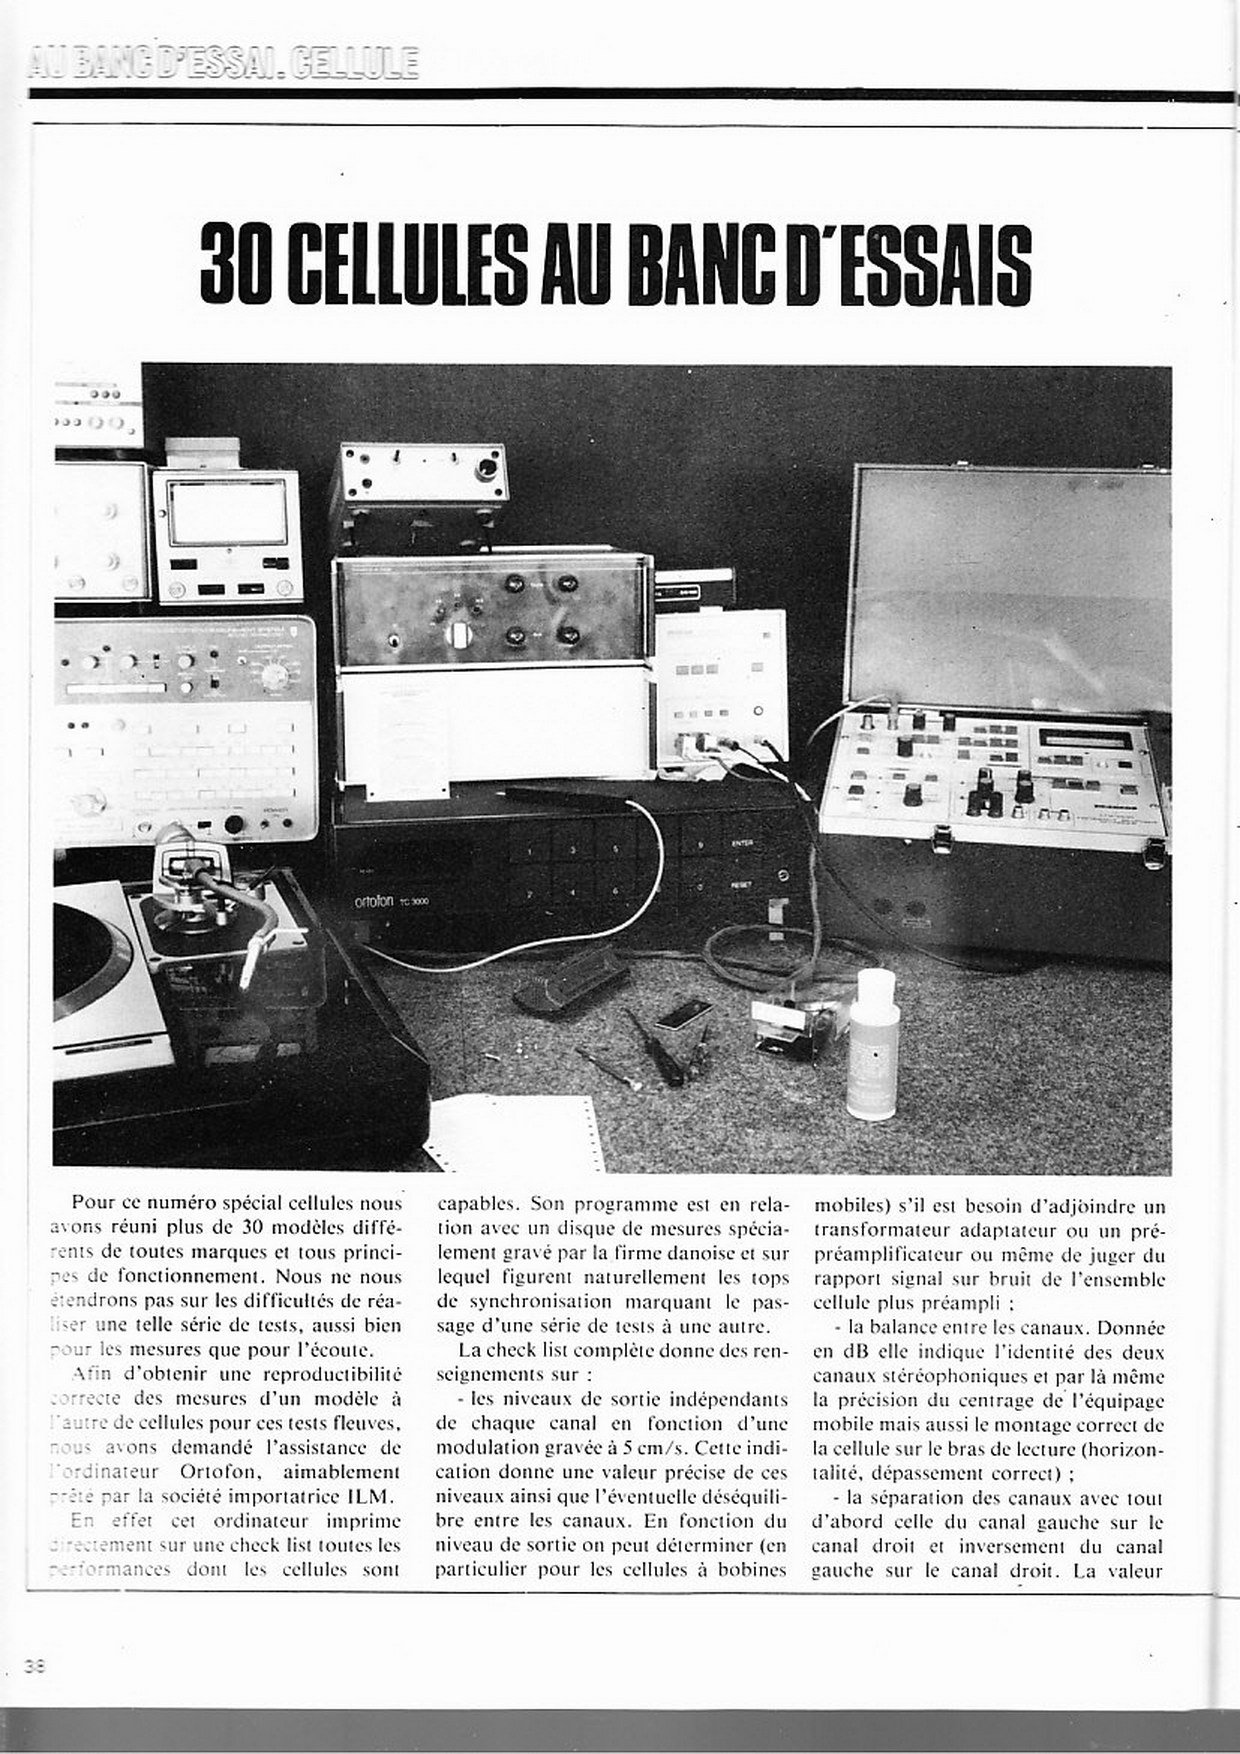 NRDS juinjuillet 1981 spécial cellules_01.jpg